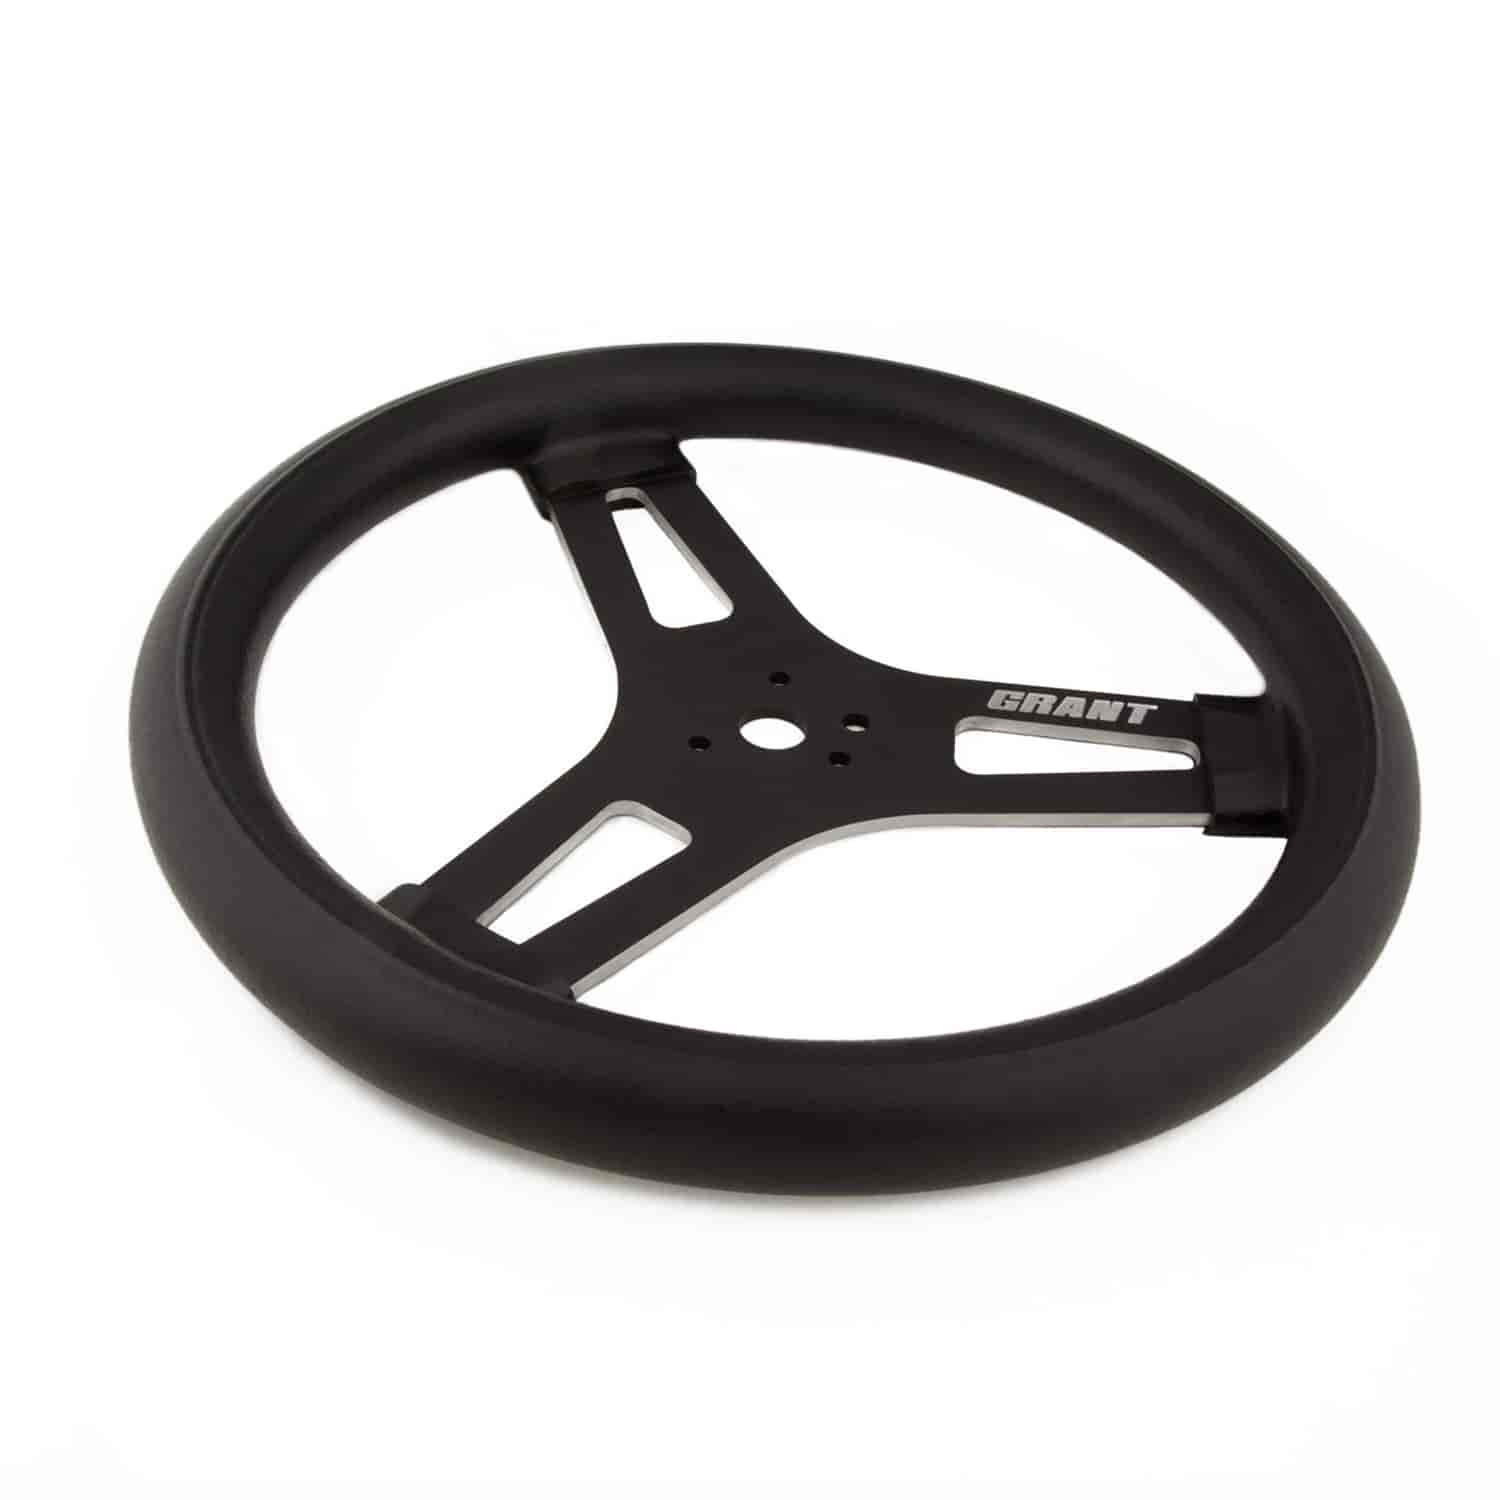 Racing Steering Wheel 15 in. Diameter